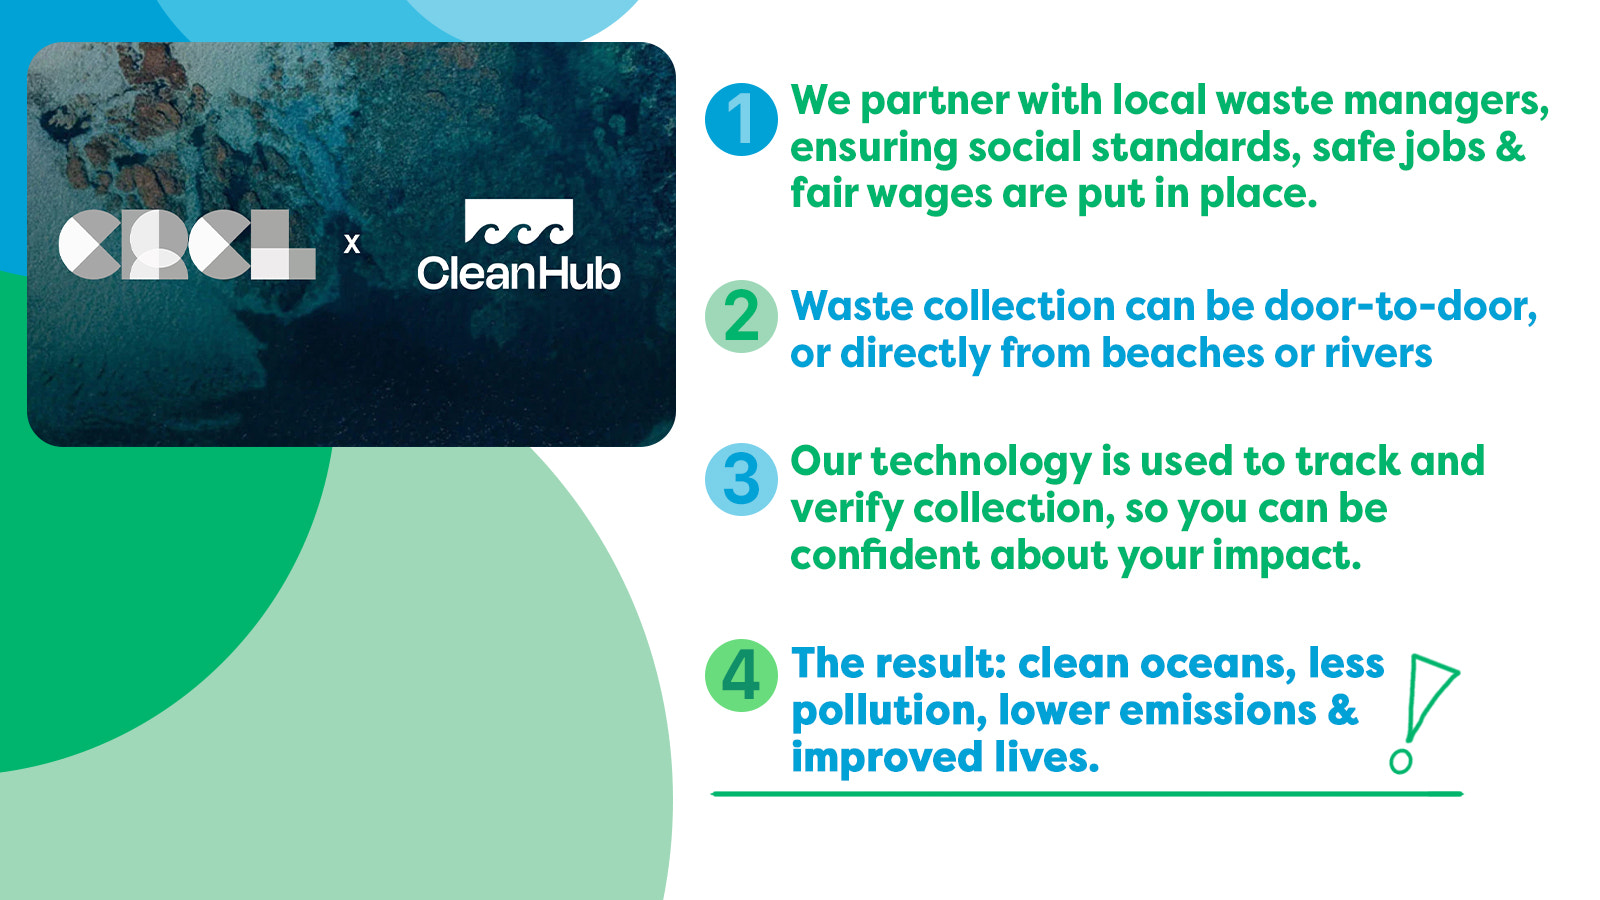 Partenariat CRCL x Cleanhub